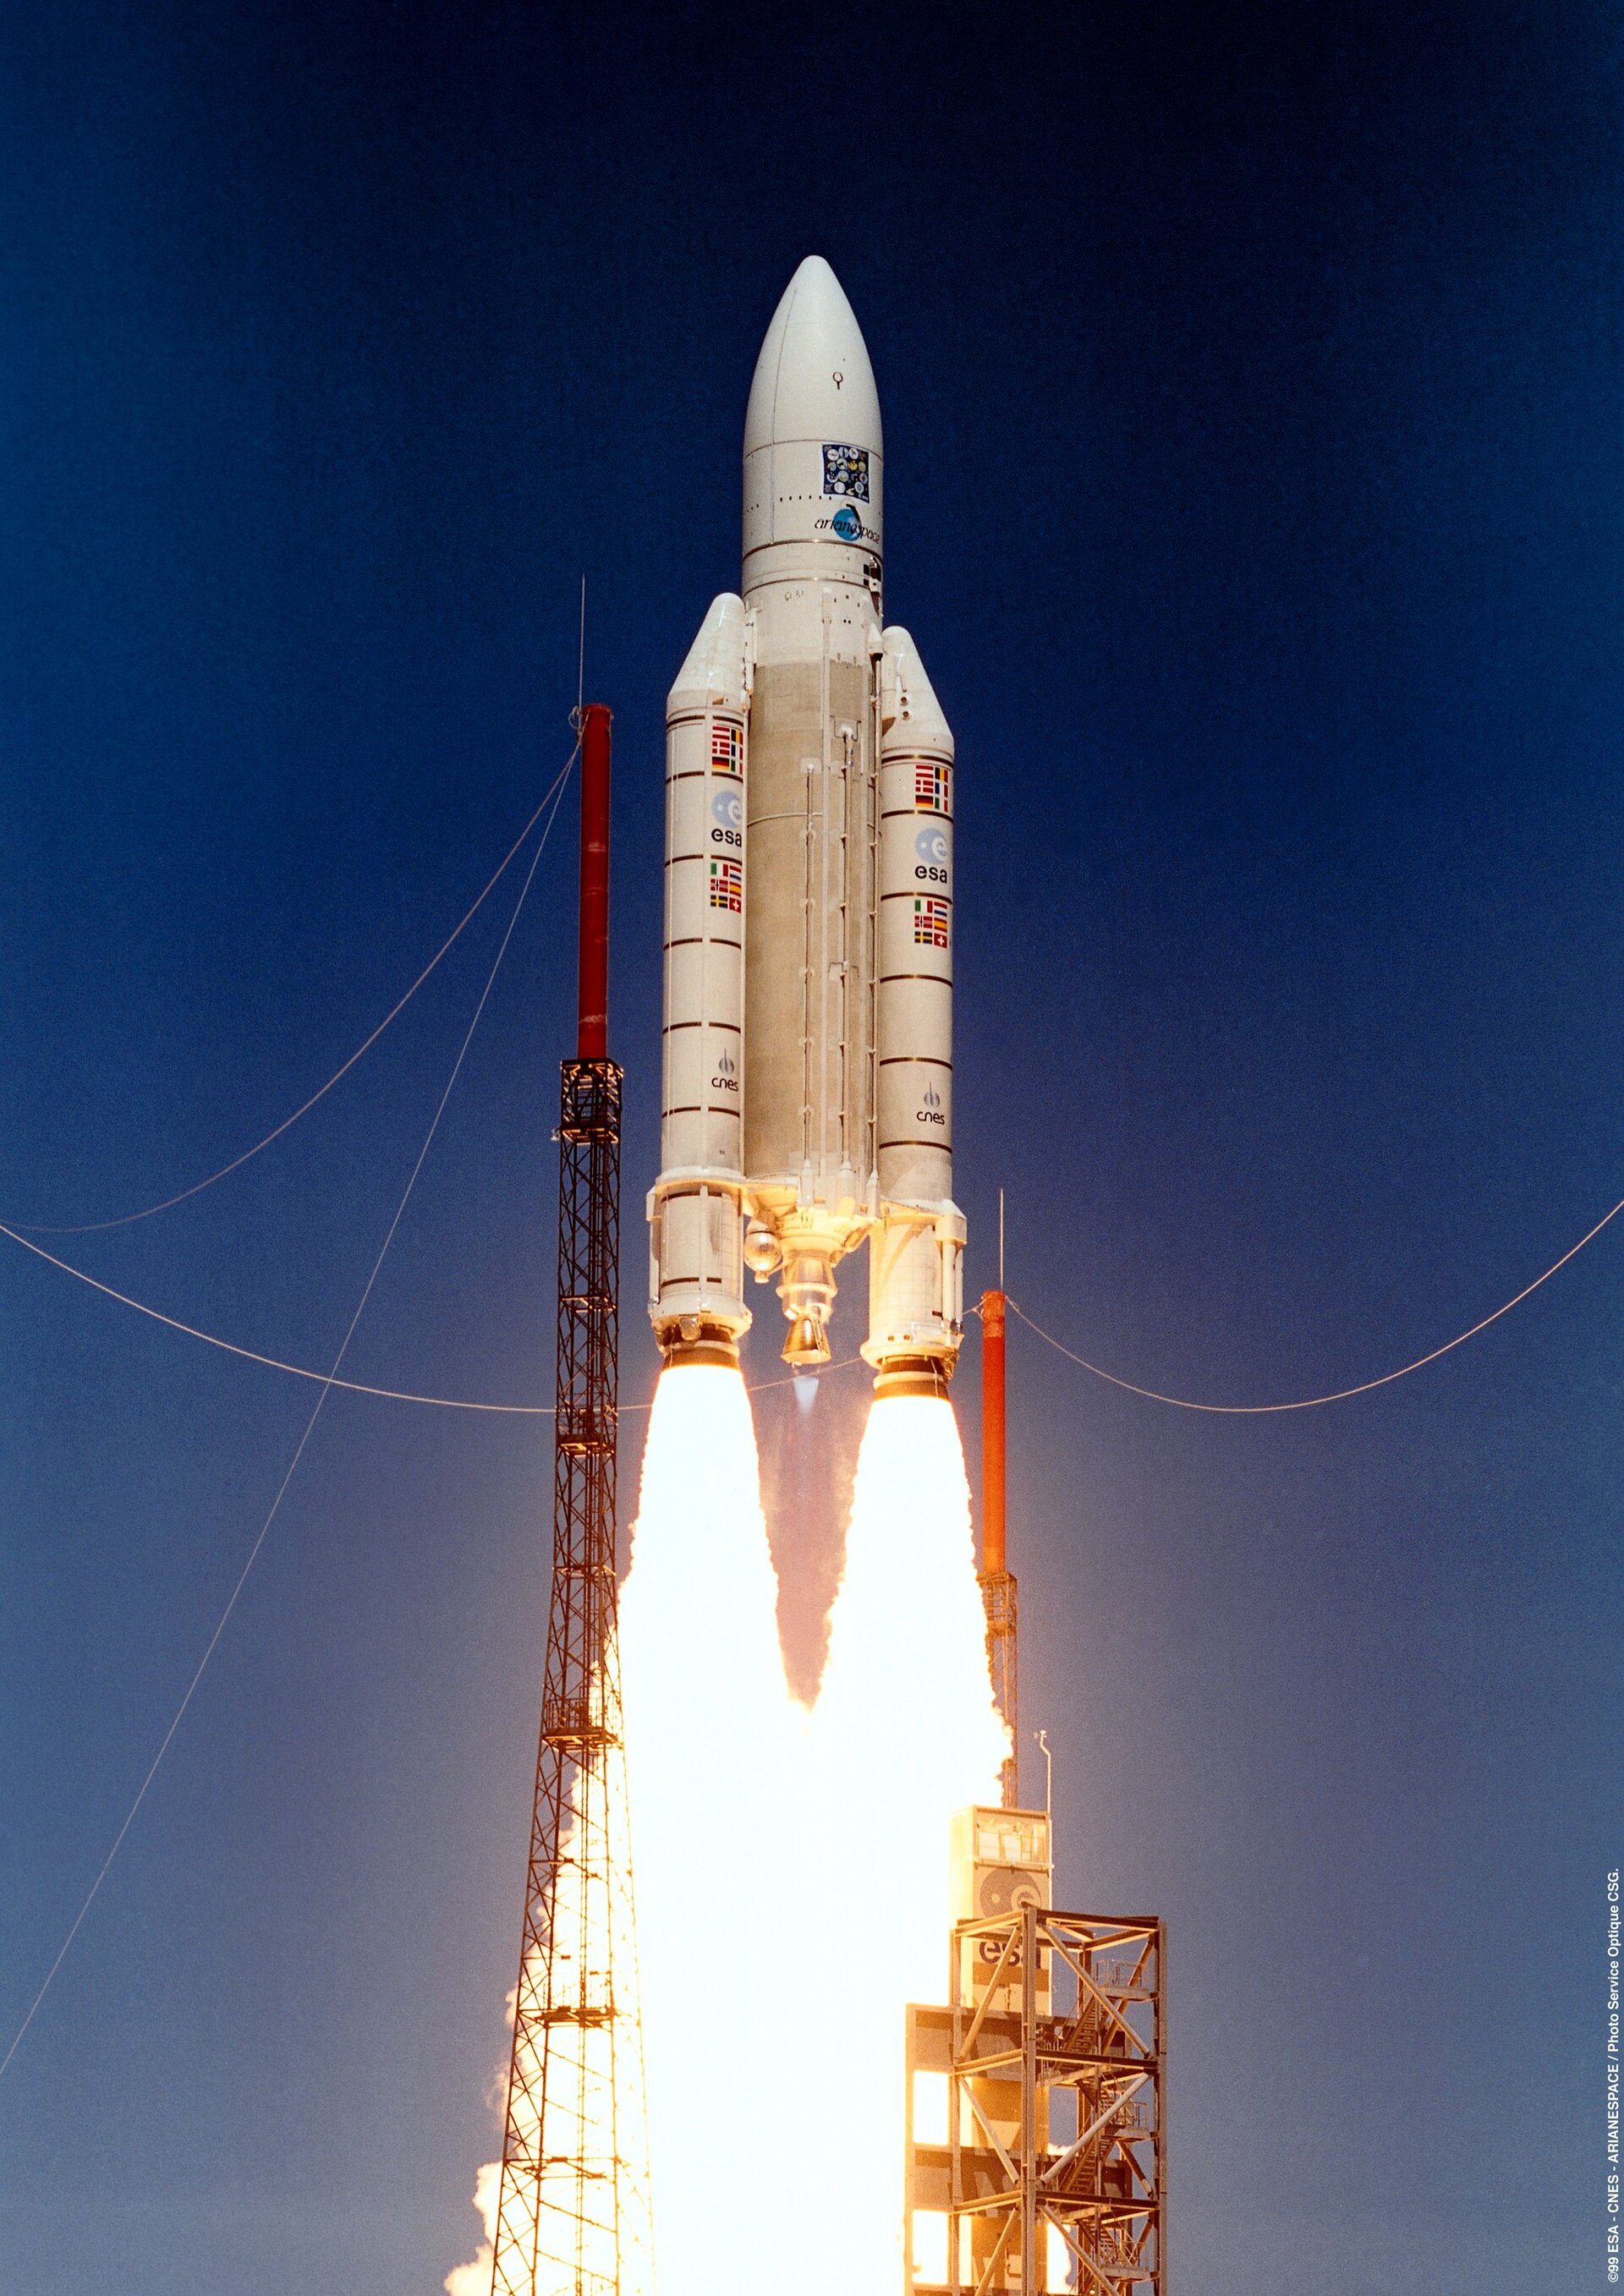 Ariane 504 's launch